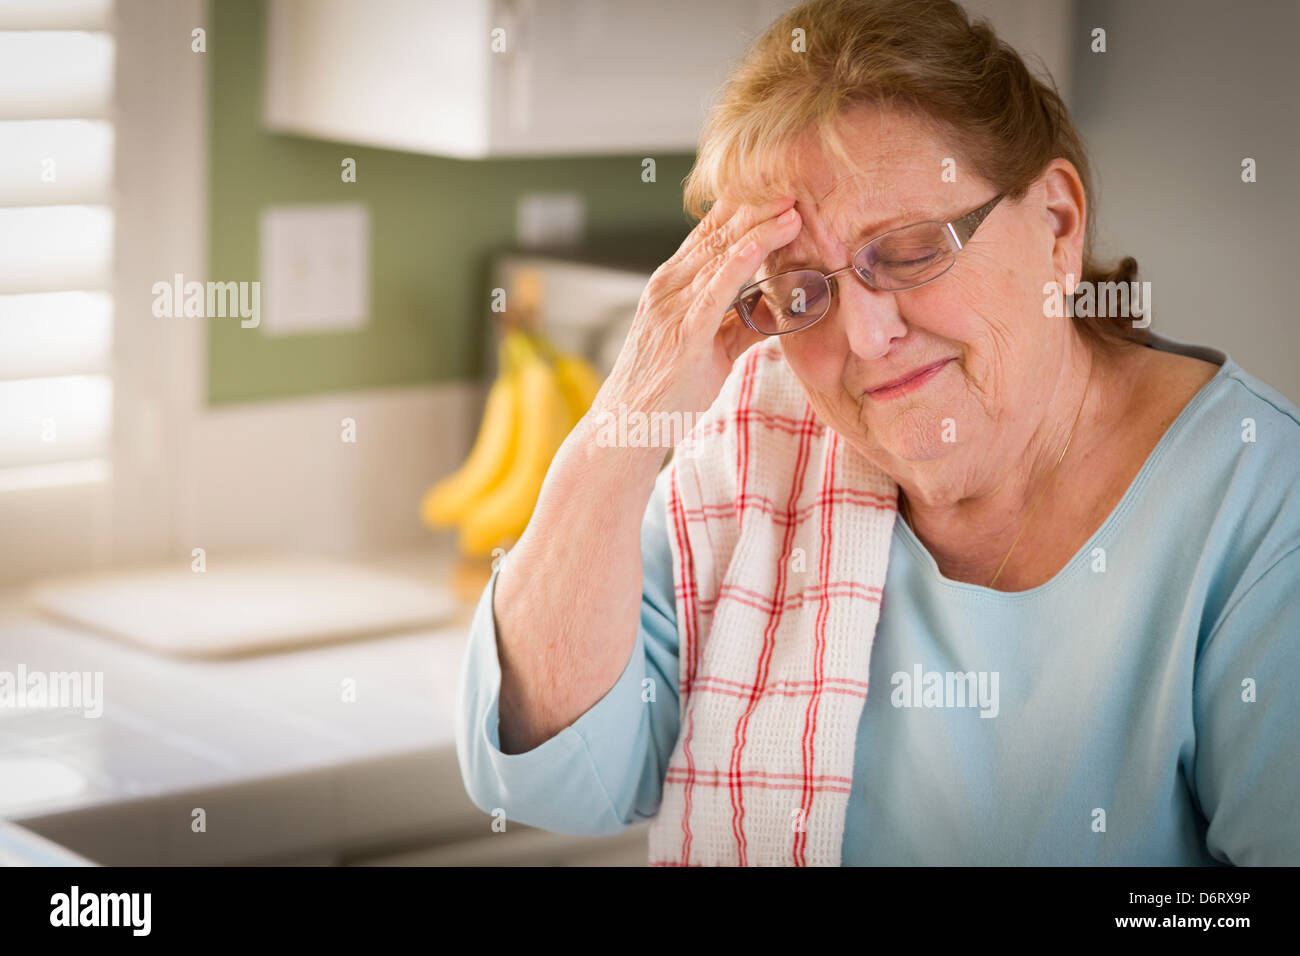 Traurig weinende Senior Erwachsene Frau in Küche Waschbecken im Haus. Stockfoto